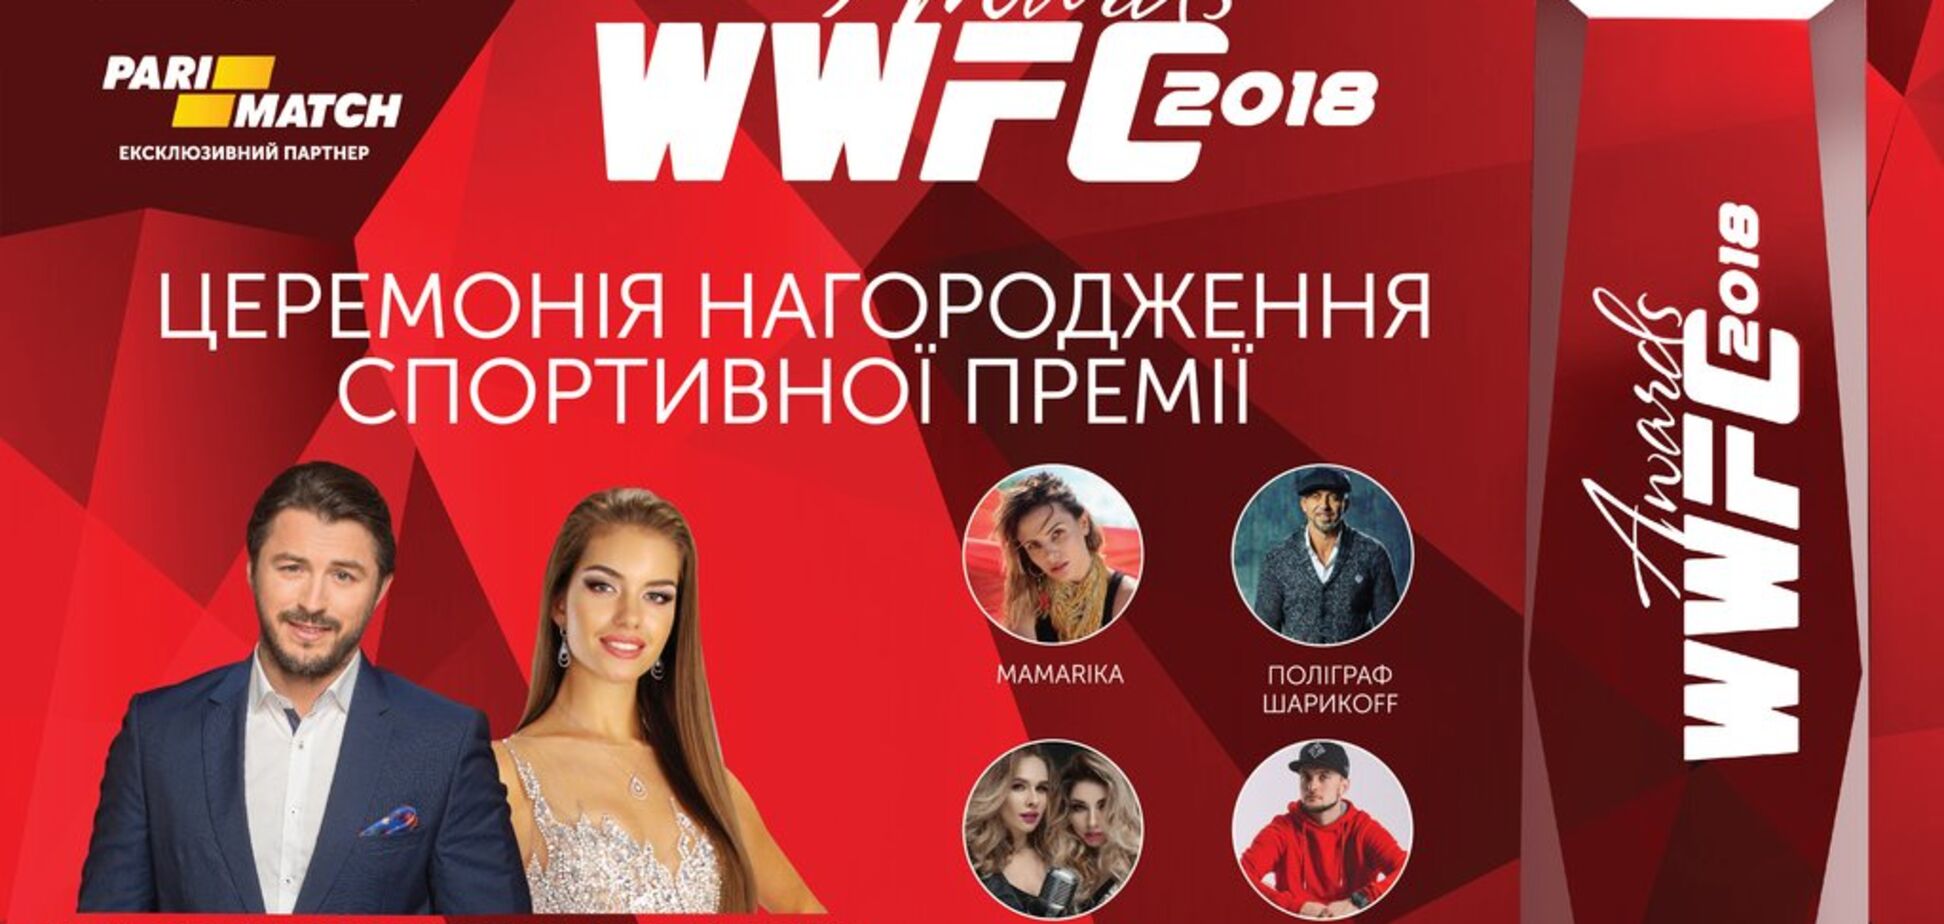 Впервые в Украине пройдёт церемония награждение лучших спортсменов ММА –  WWFC Awards 2018